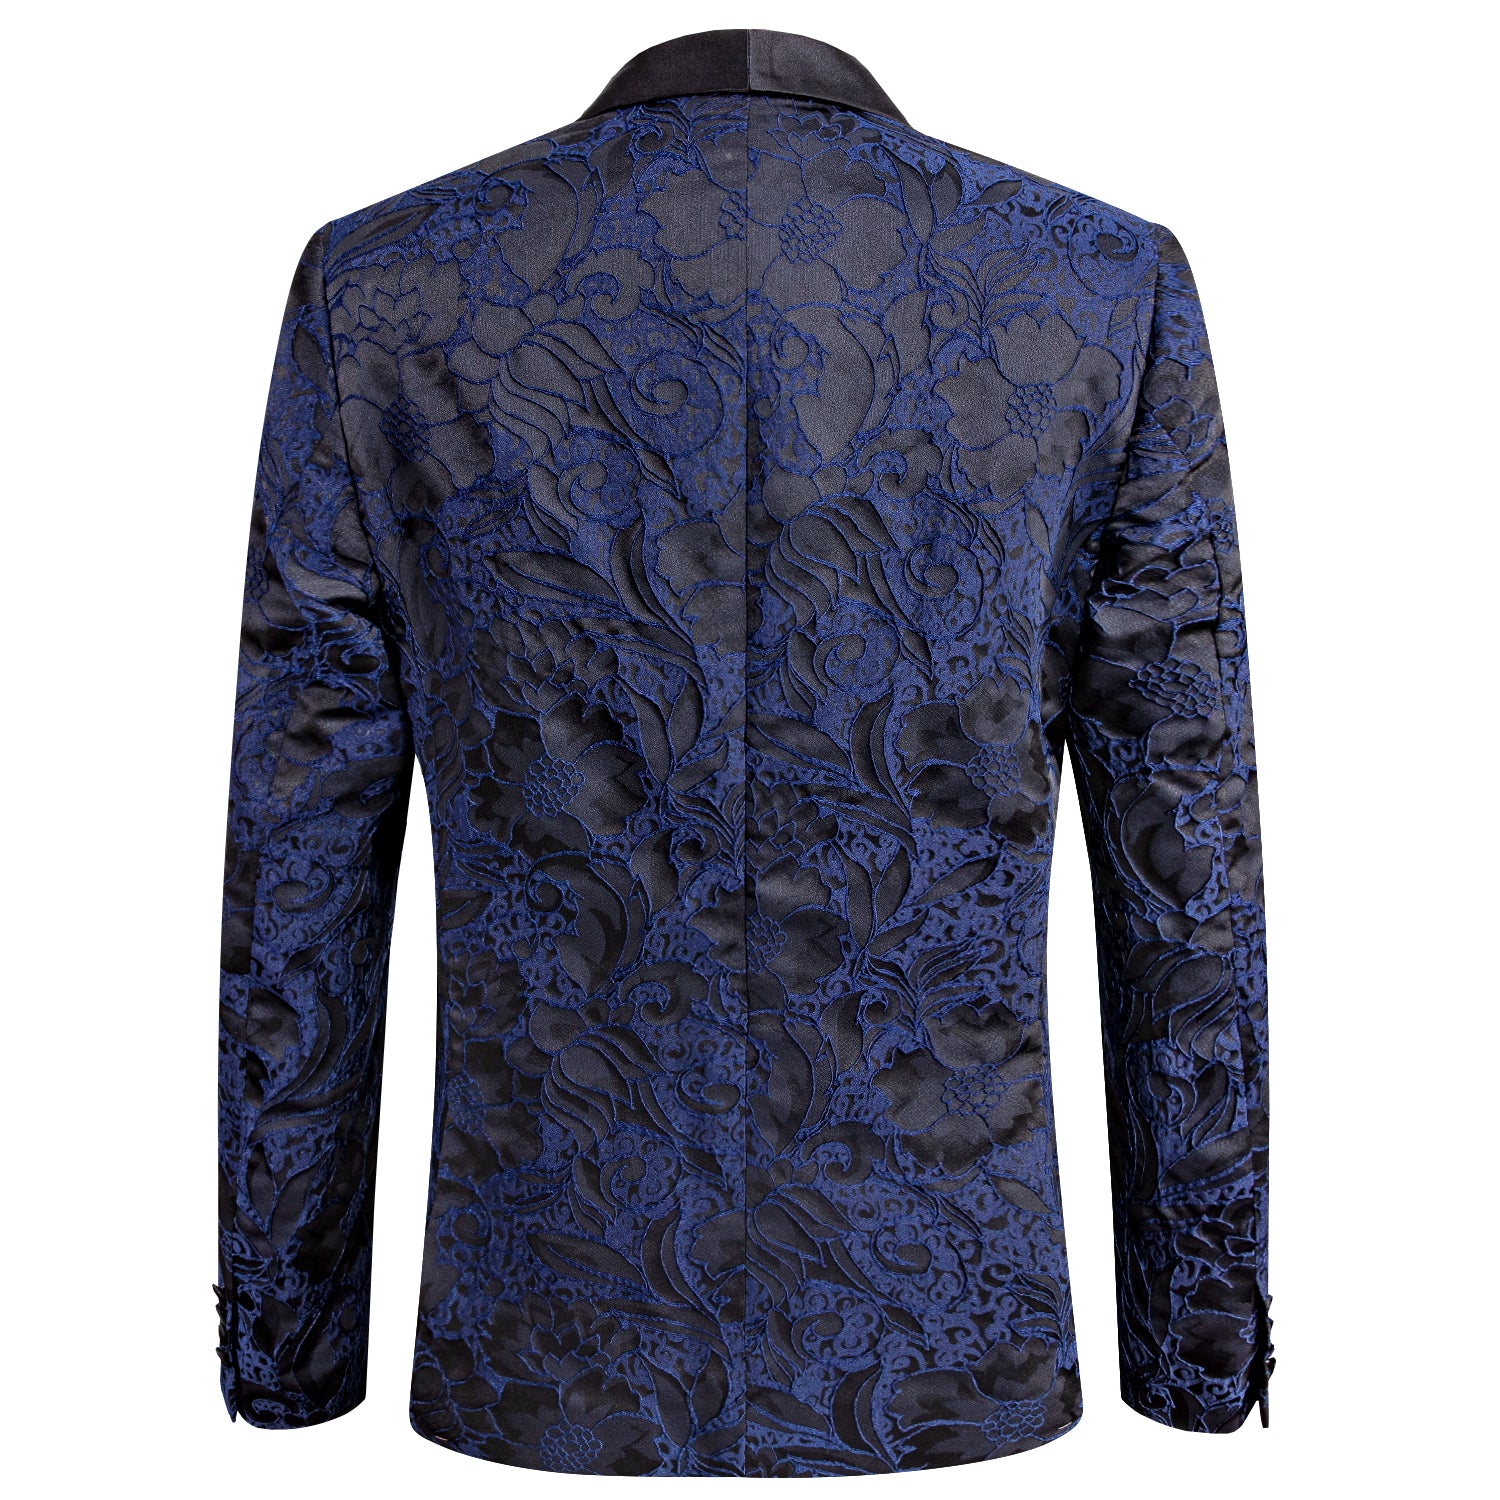 New Luxury Blue Black Floral Men's Suit Set